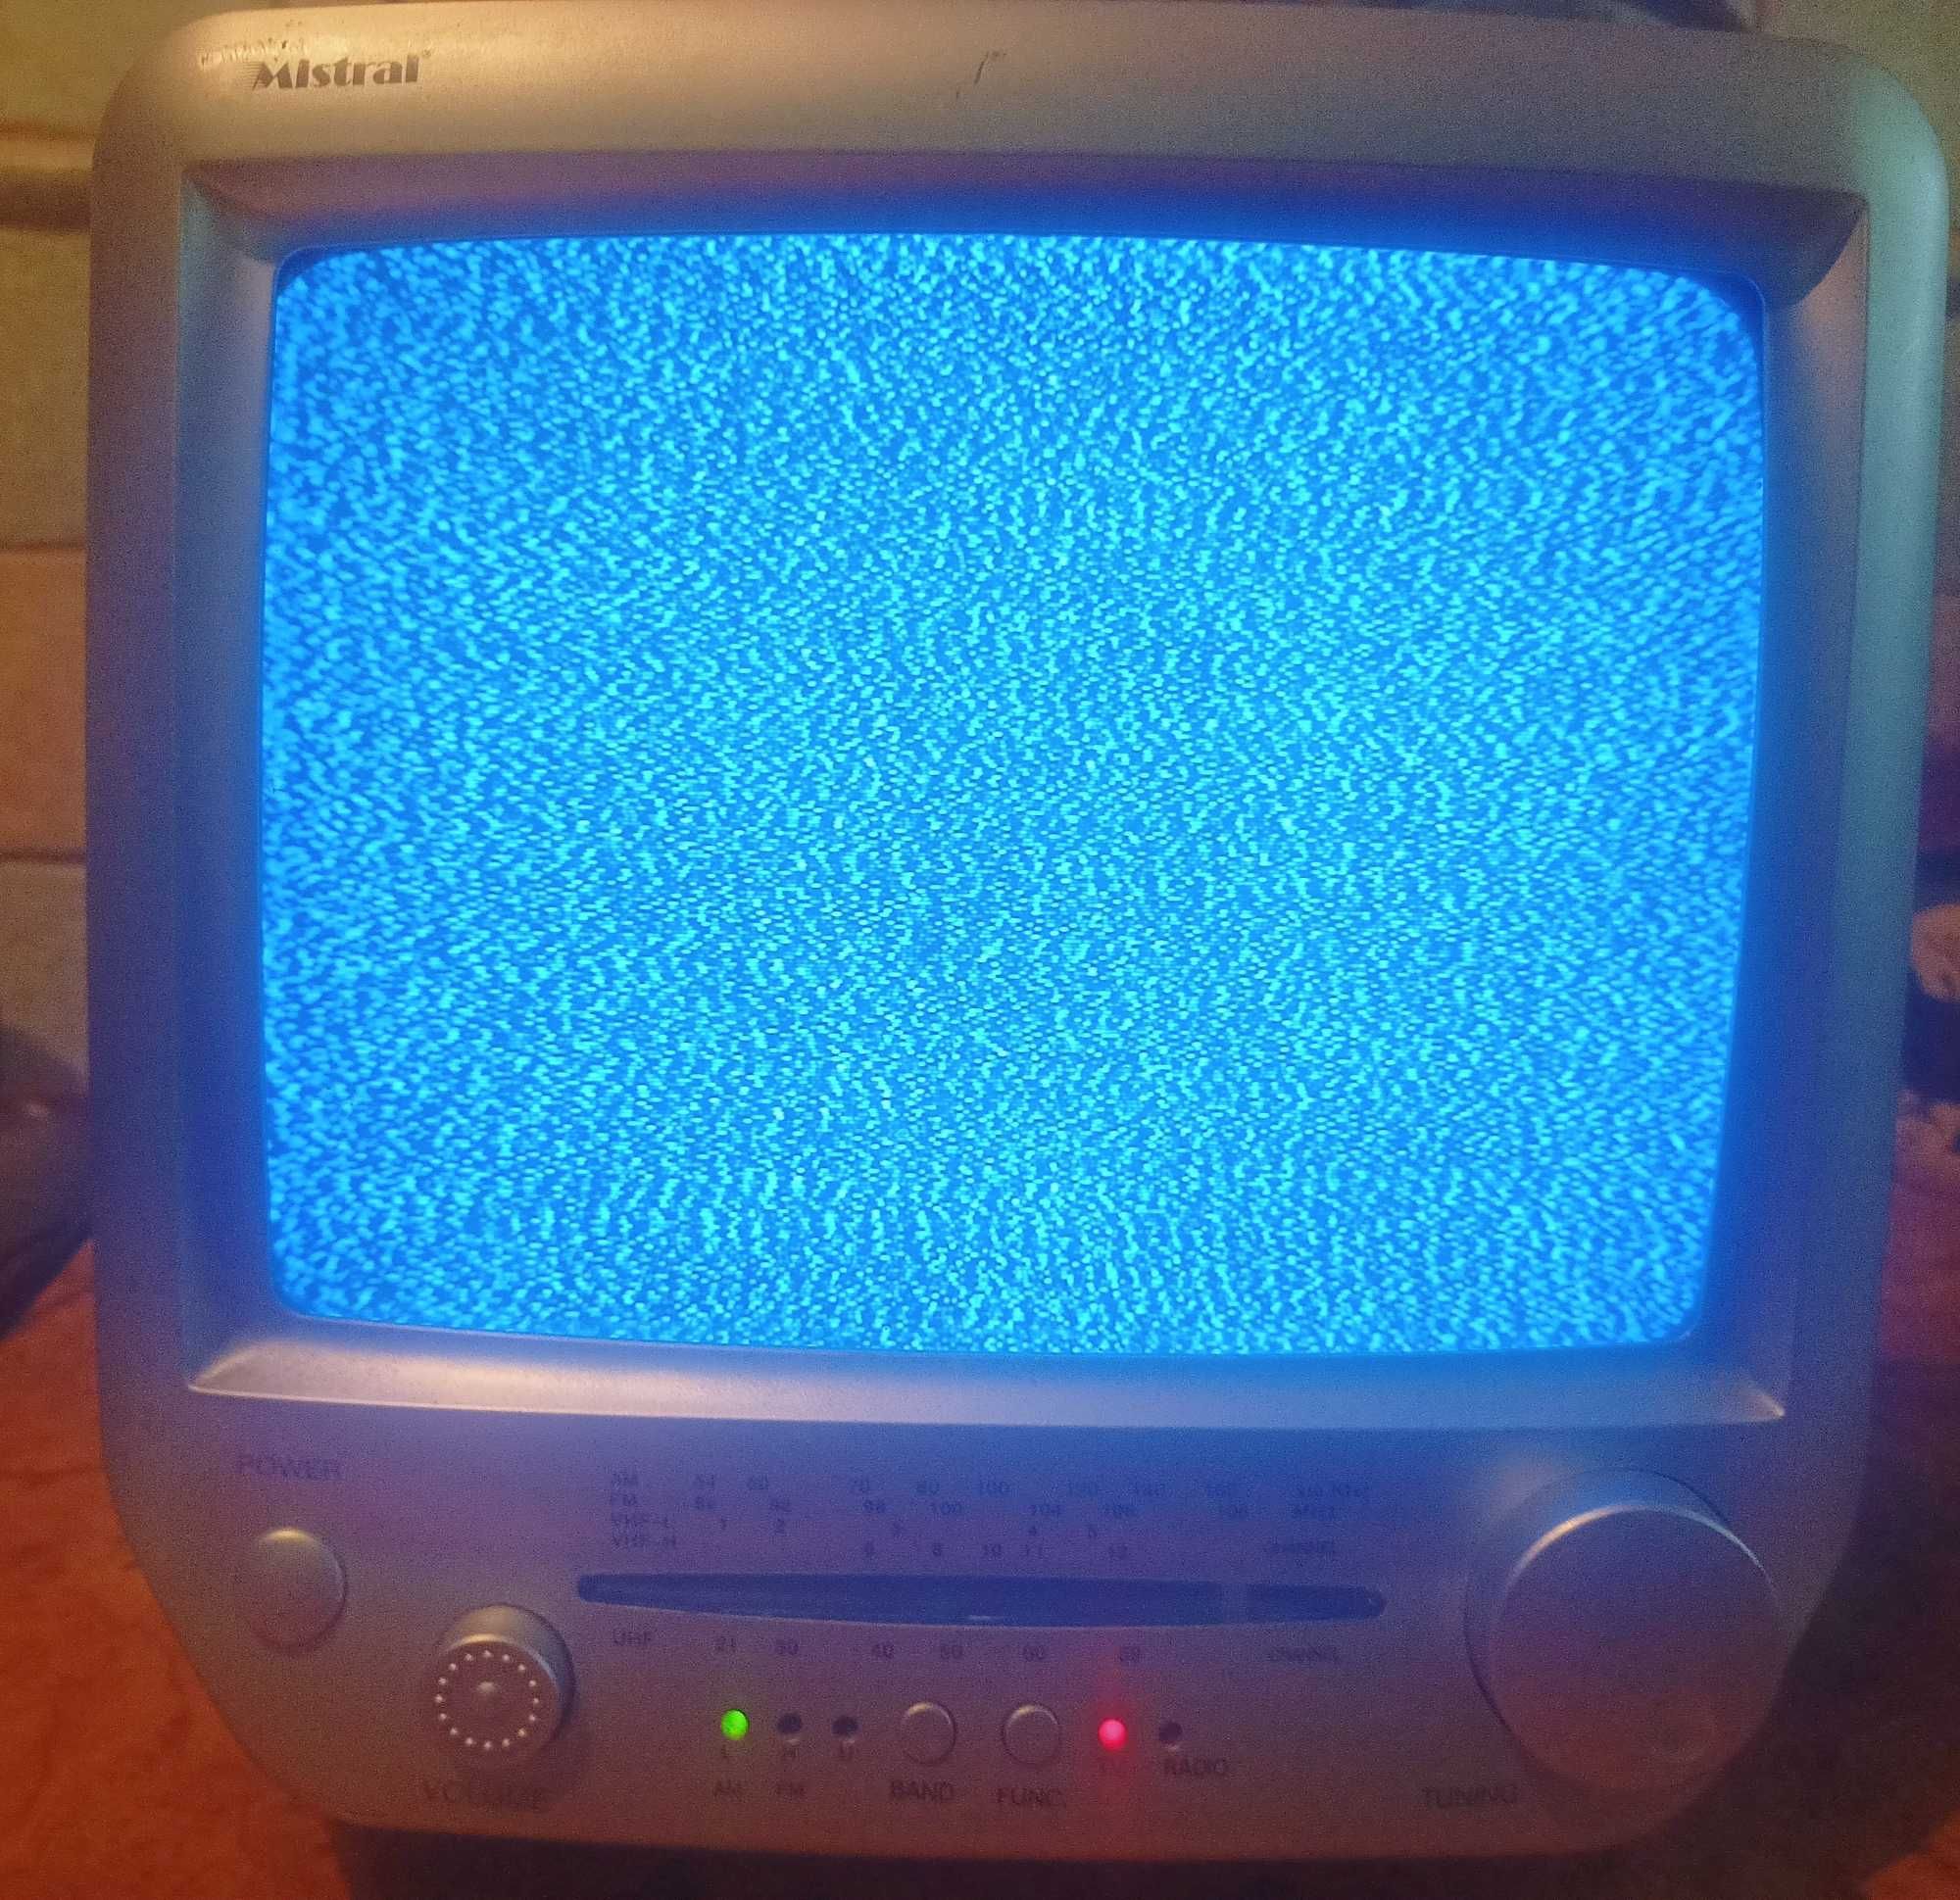 Stary telewizor turystyczny Mistral